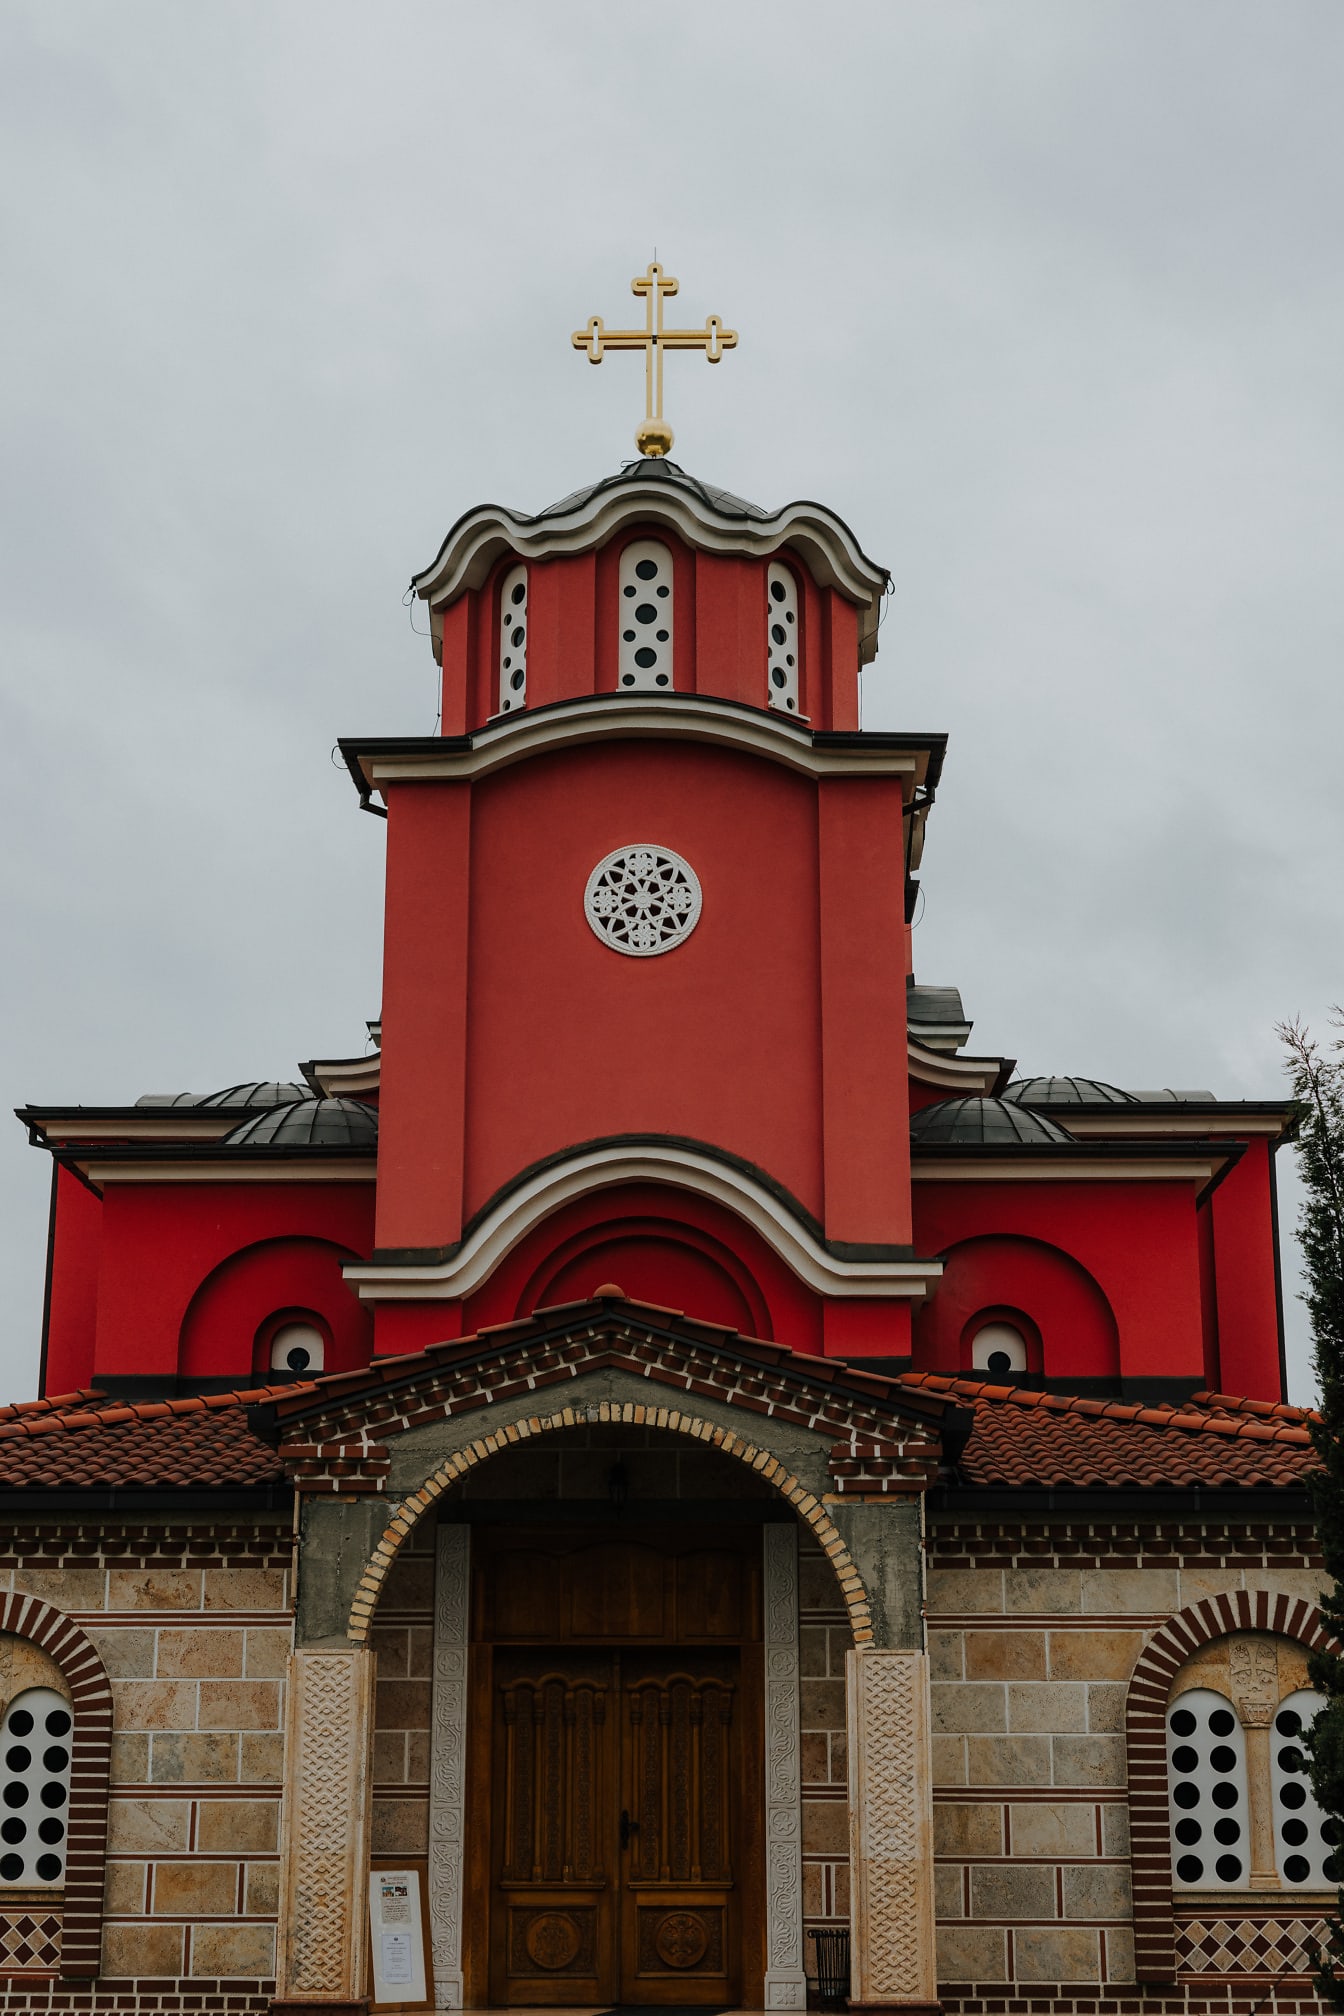 Turnul bisericii roșu închis cu cruce de aur pe biserica ortodoxă